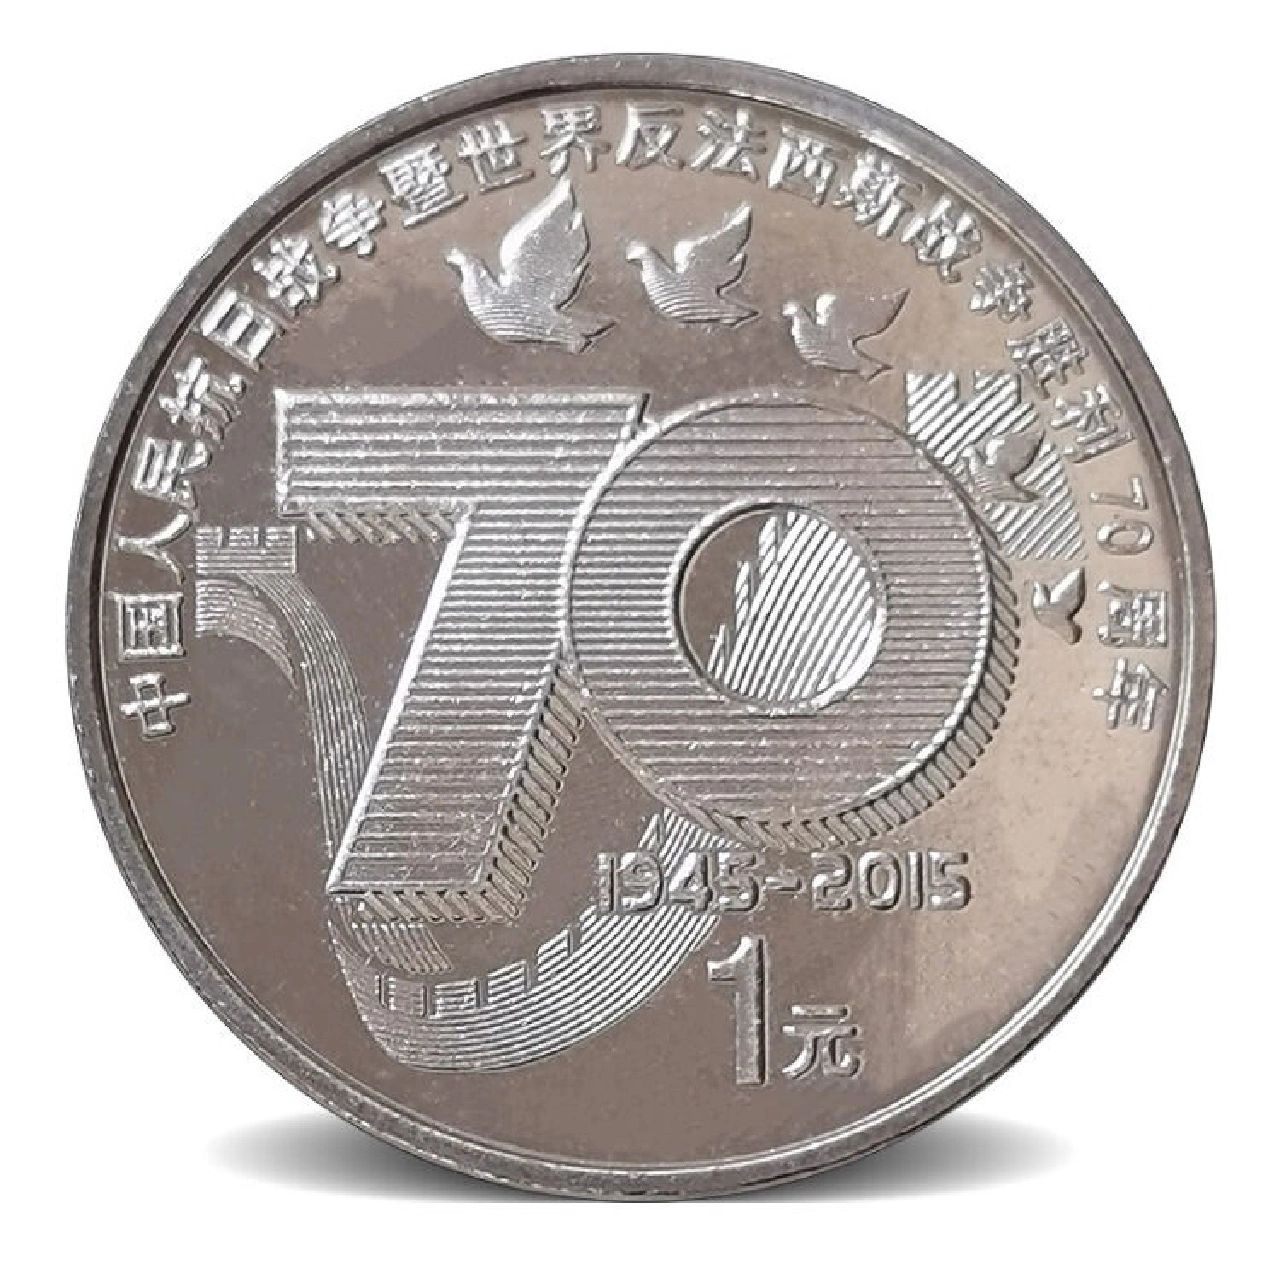 2015年抗战胜利70周年纪念币 铭记历史,珍爱和平——抗战胜利70周年